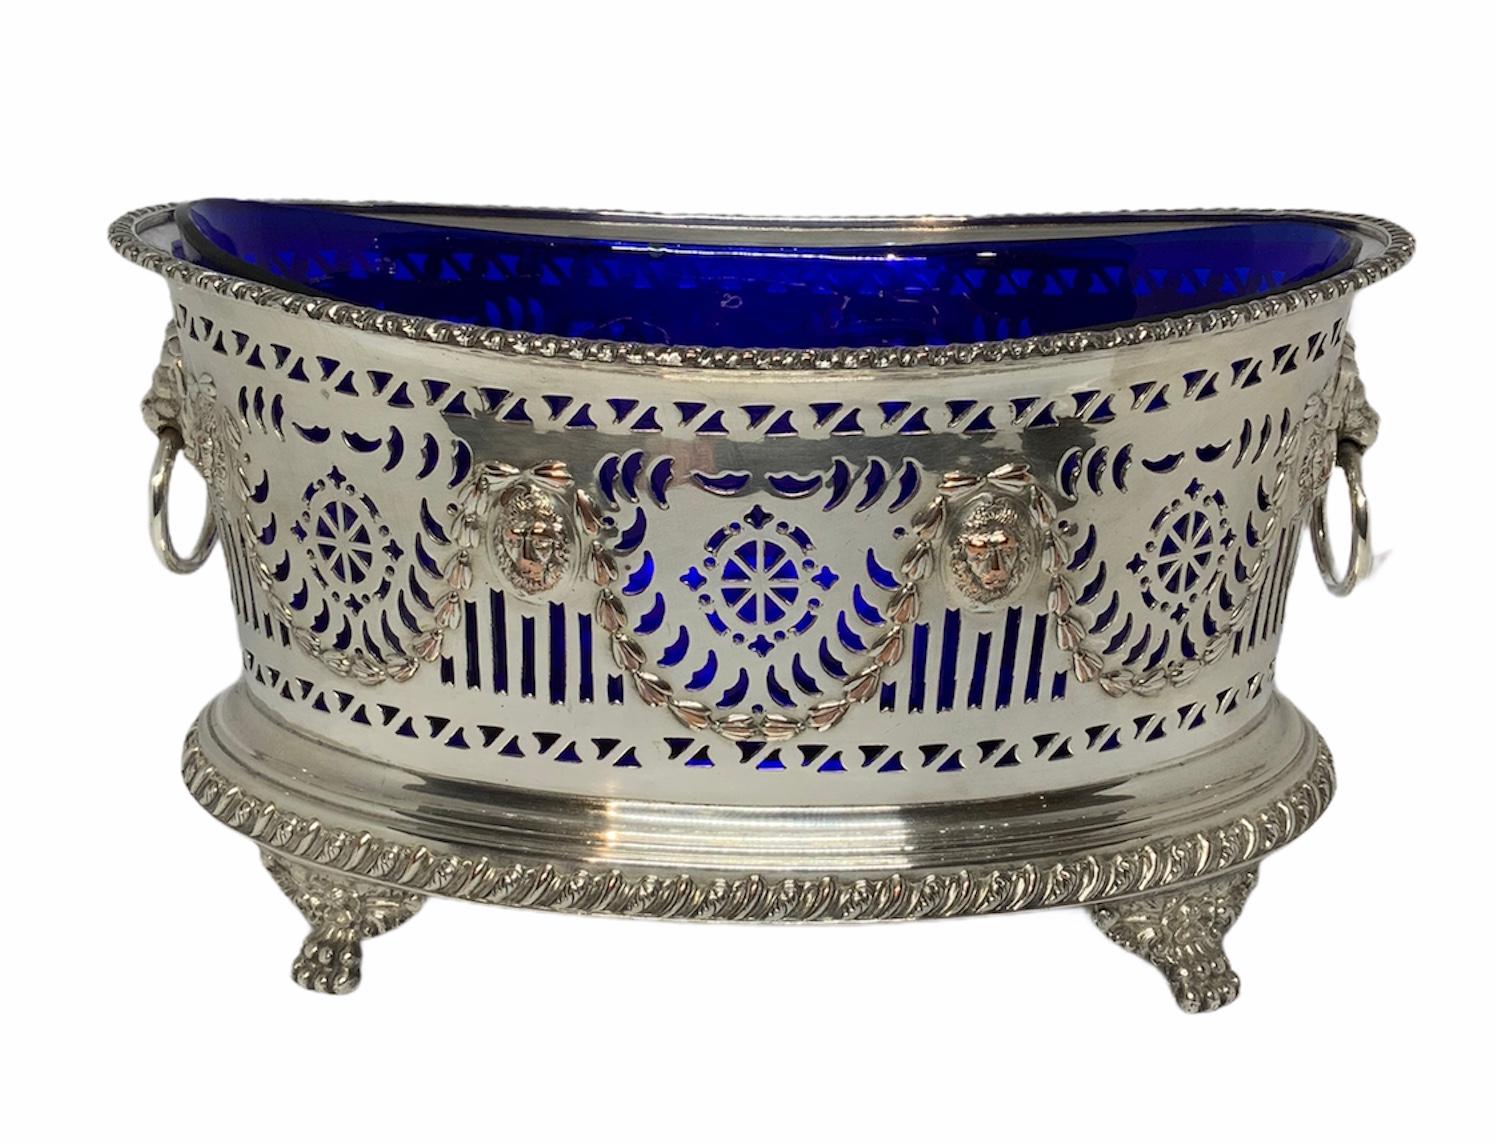 Ce centre de table est un bol ovale en verre bleu cobalt en métal argenté de style Empire. La coupe réticulée est décorée d'une guirlande de feuilles de laurier alternant avec un masque de lions en repousse. Les bords supérieur et inférieur de la